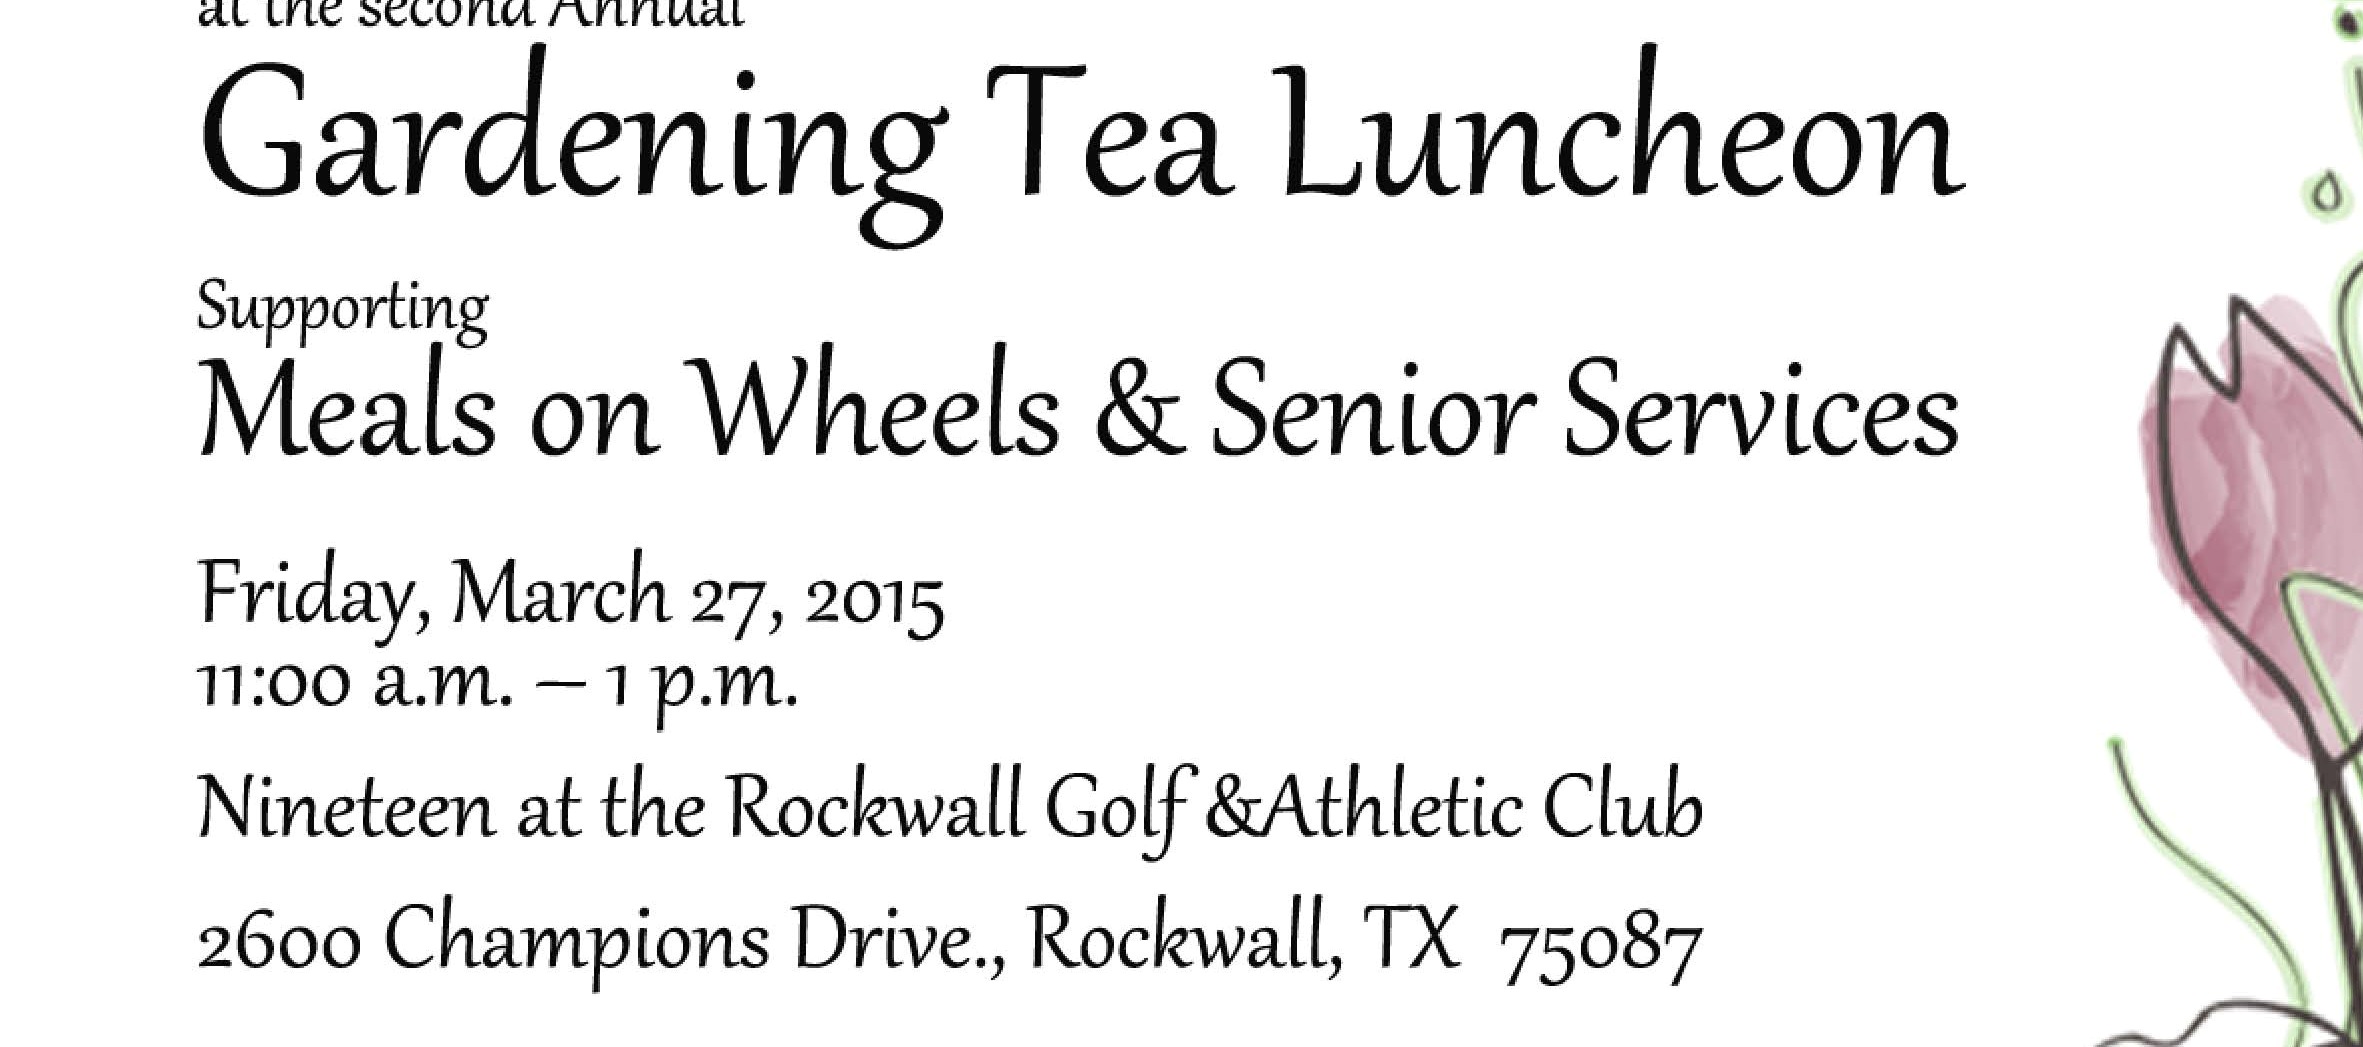 Gardening Tea Luncheon to benefit Meals on Wheels